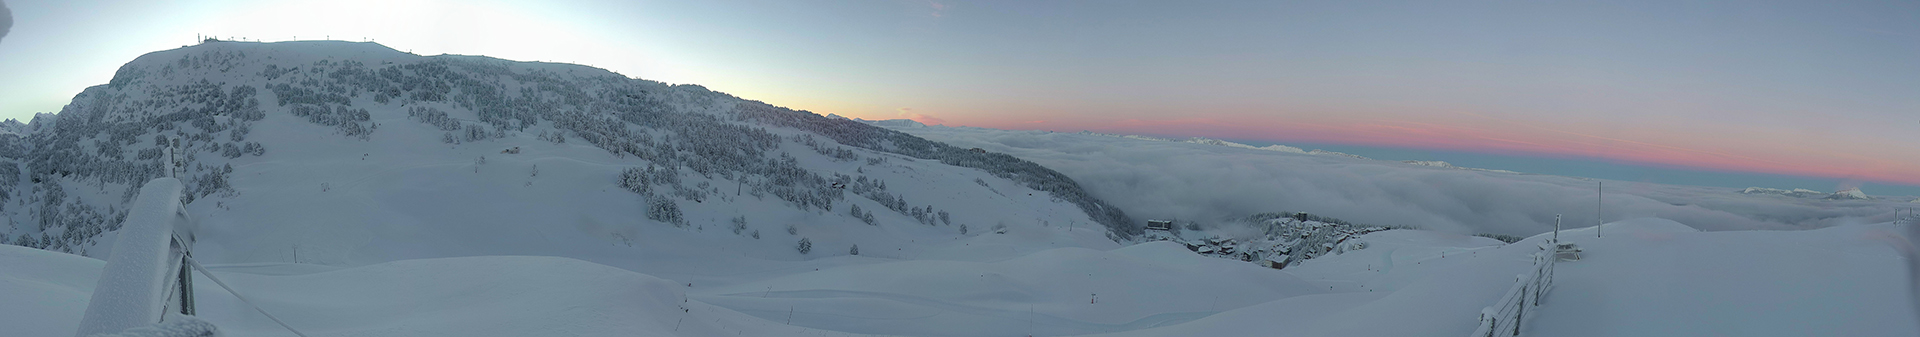 Chamrousse webcam sunrise january 2021 ski resort mountain grenoble isere french alps france - © Skaping